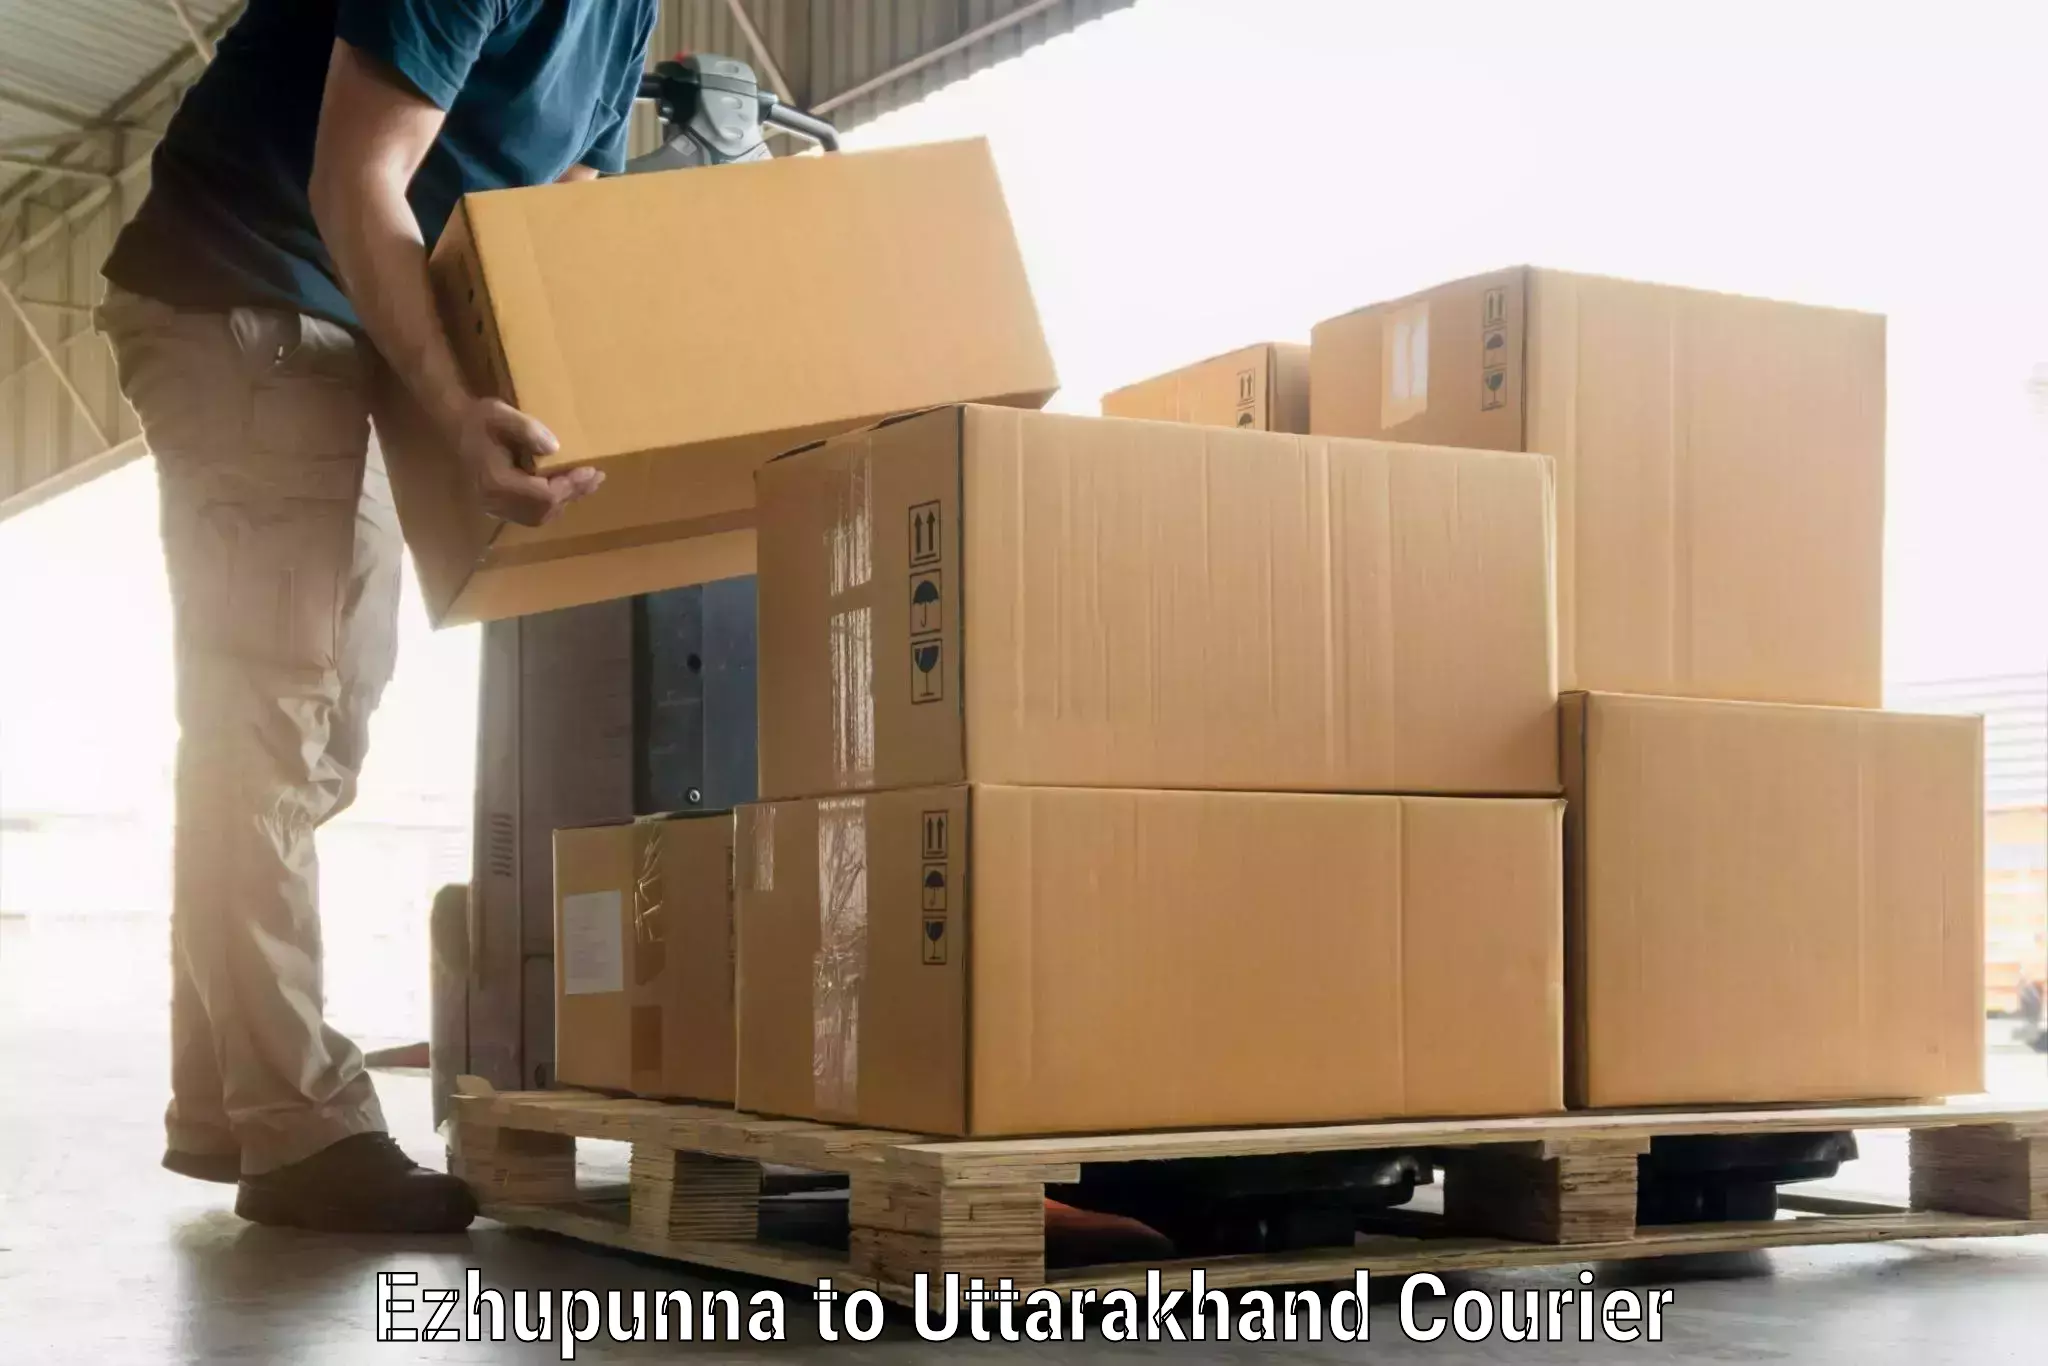 Luggage transport rates calculator Ezhupunna to Uttarakhand